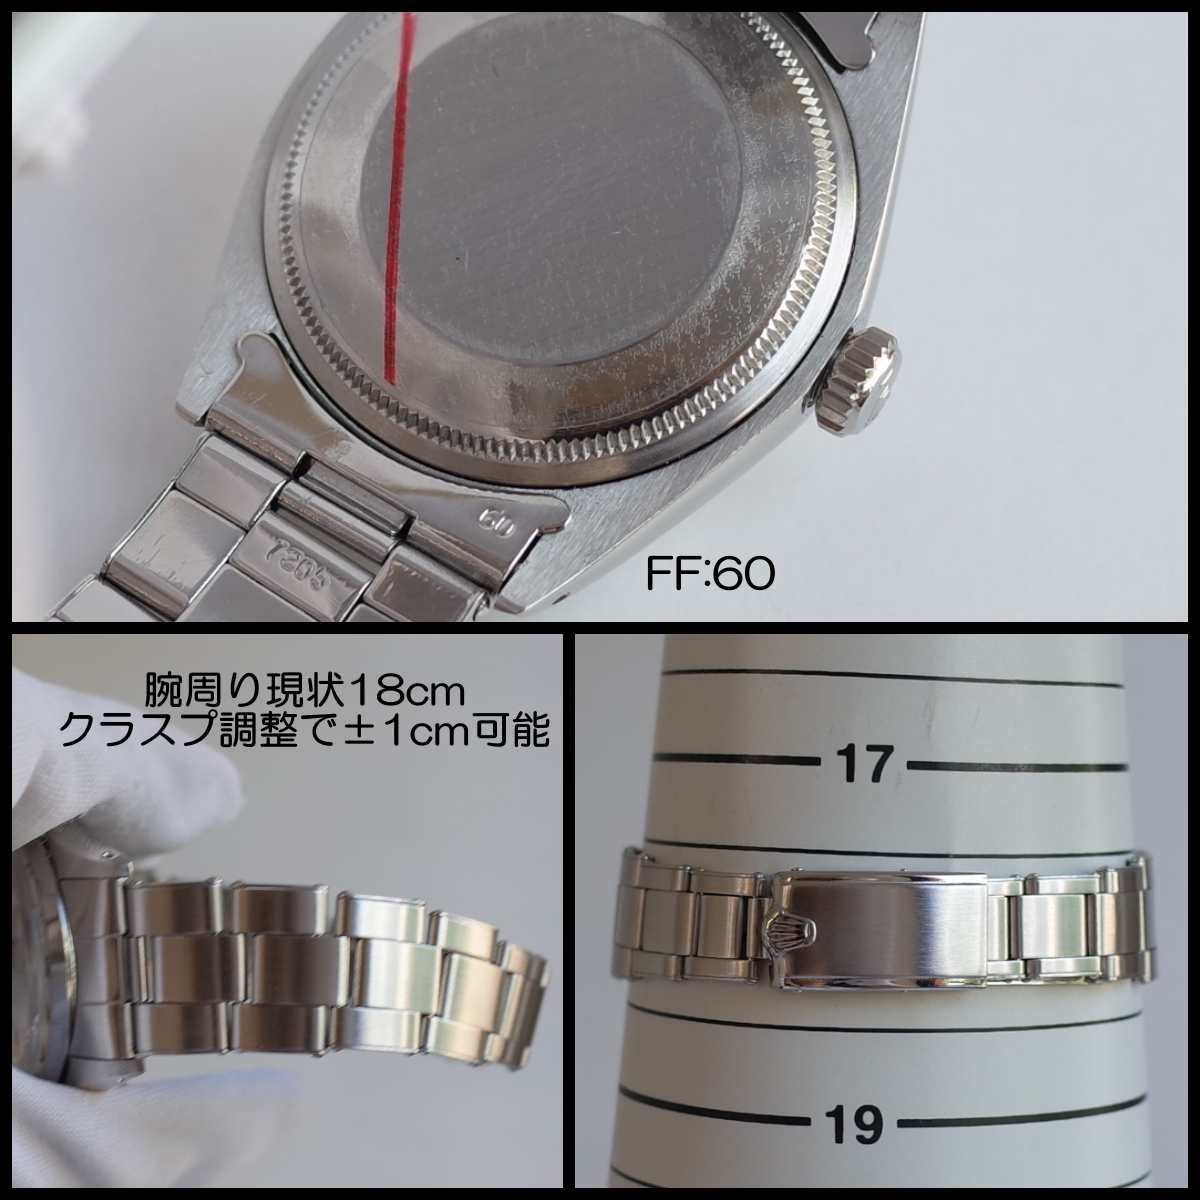 ロレックス 1500 1969年製 オイスターパーペチュアルデイト SS メンズ デベソ リベットブレス 自動巻 CAL.1570 腕時計 ROLEX  アンティーク